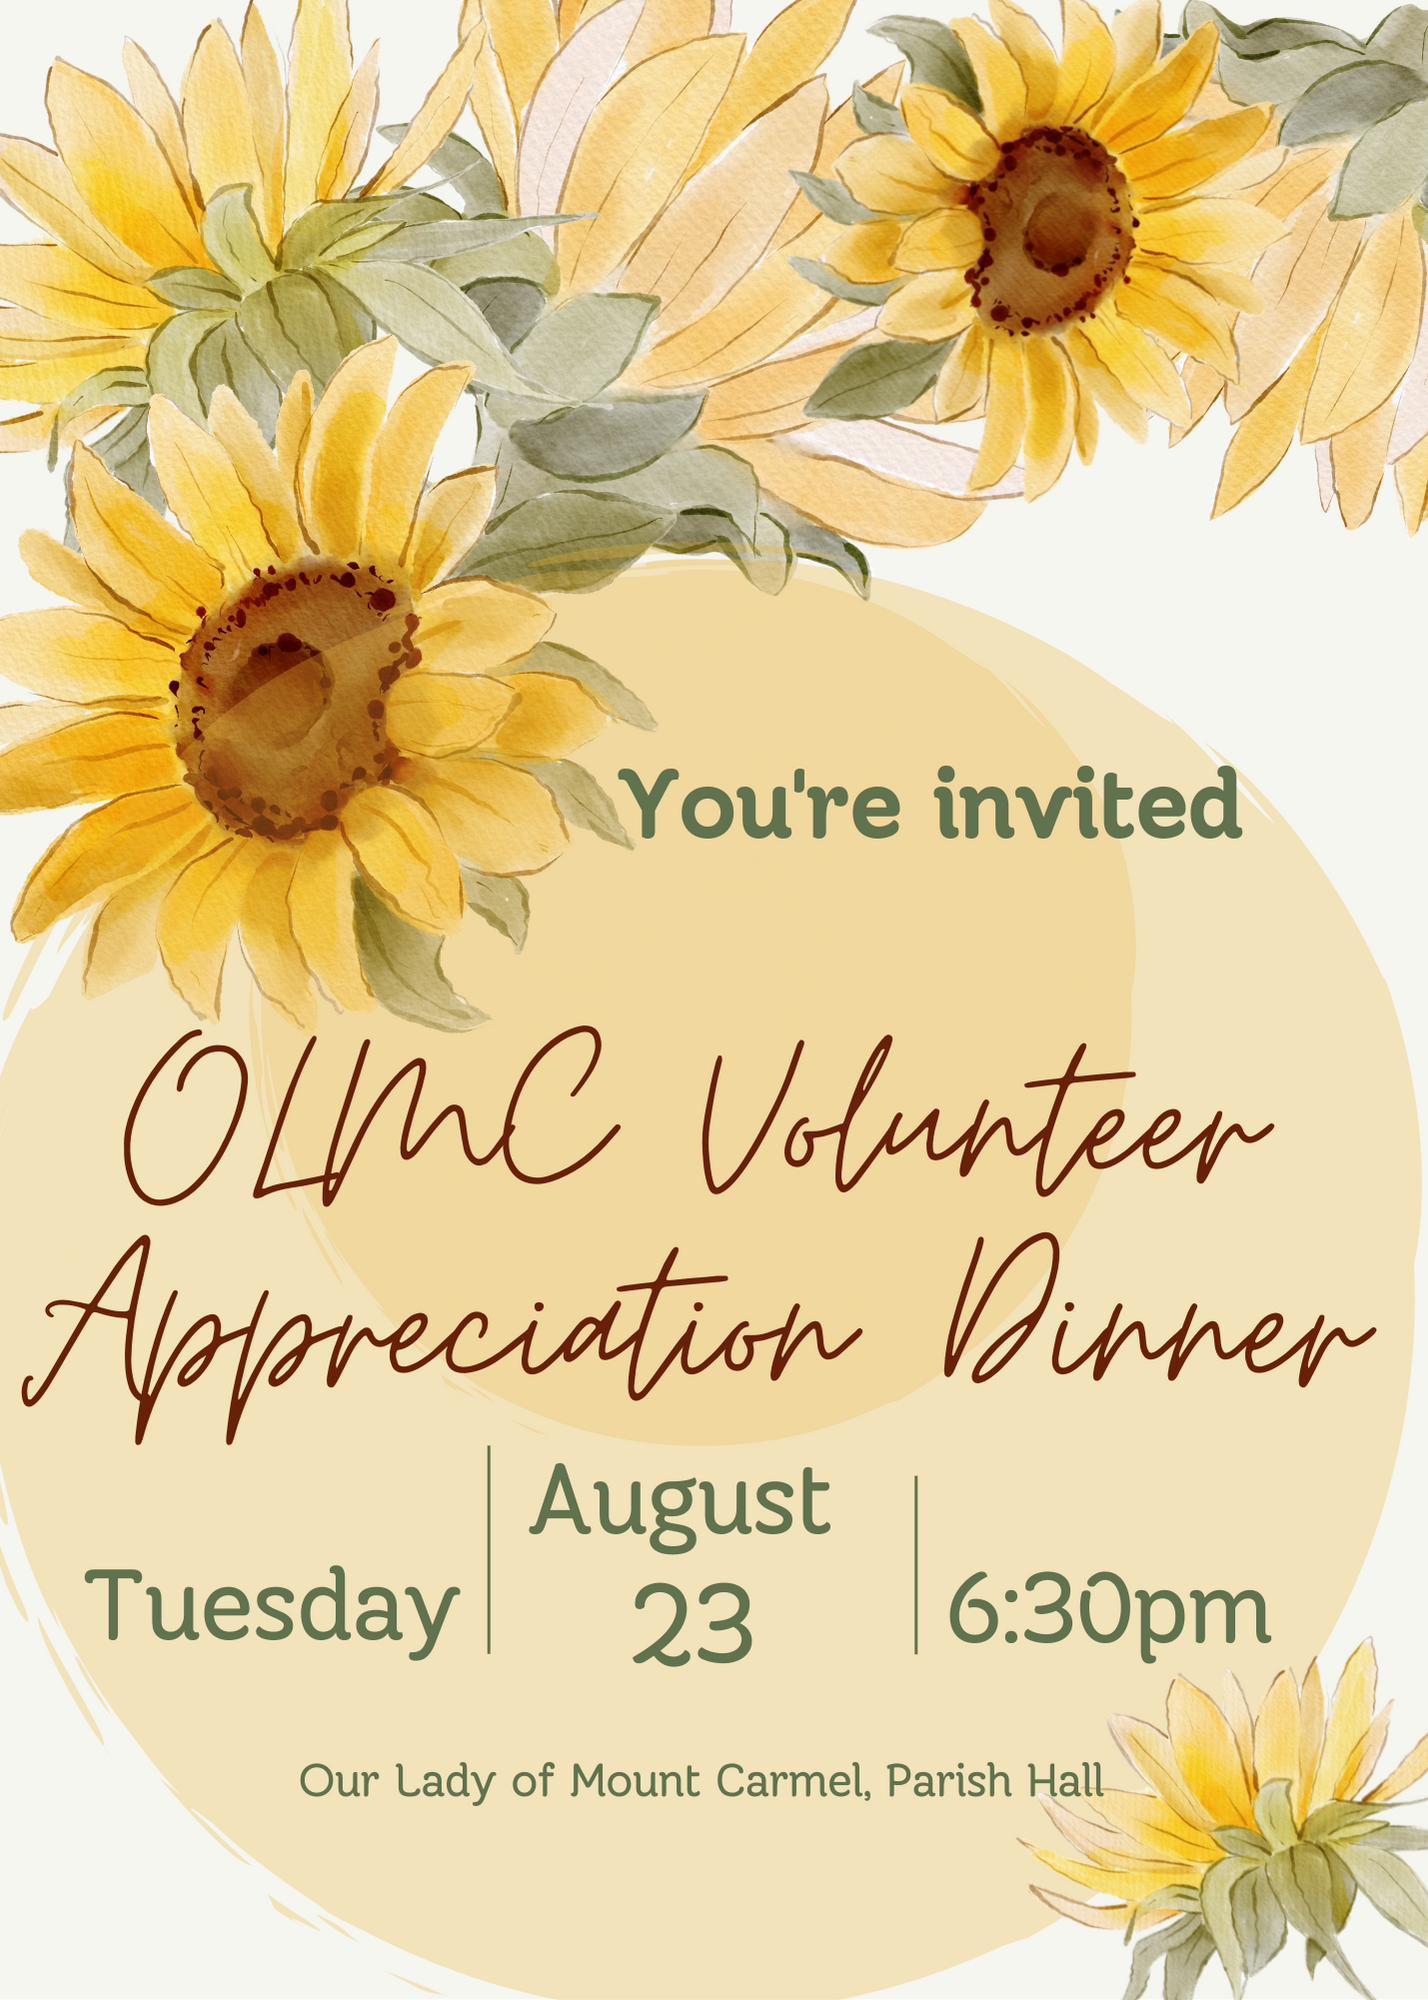 Volunteer Appreciation Dinner August 23, 2022